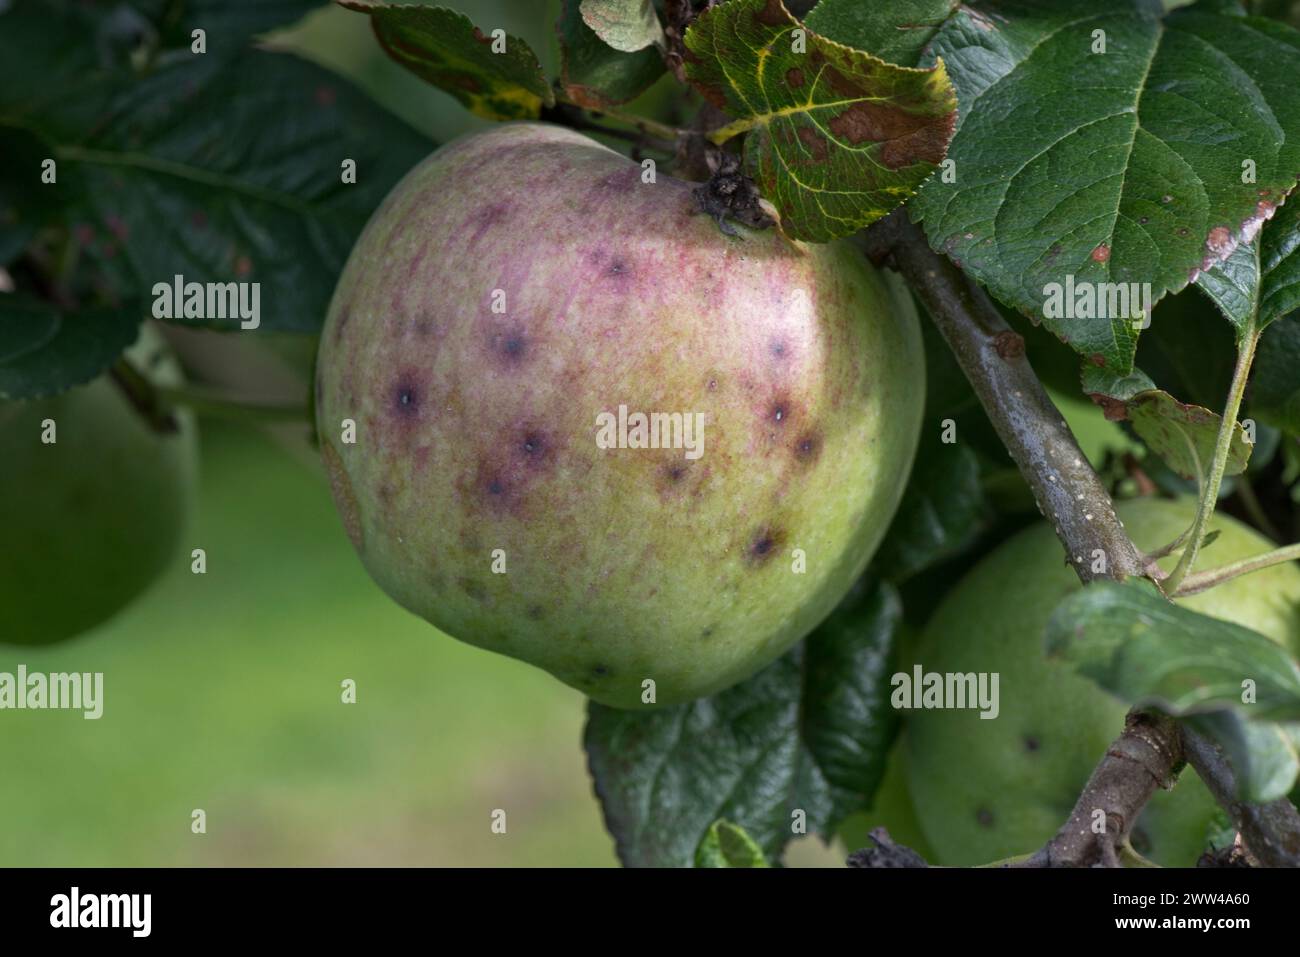 Petites lésions discrètes, symptôme de la gale de la pomme (Venruria inaequalis) sur grande pomme Blenheim mature Orange en été, Berkshire, août Banque D'Images